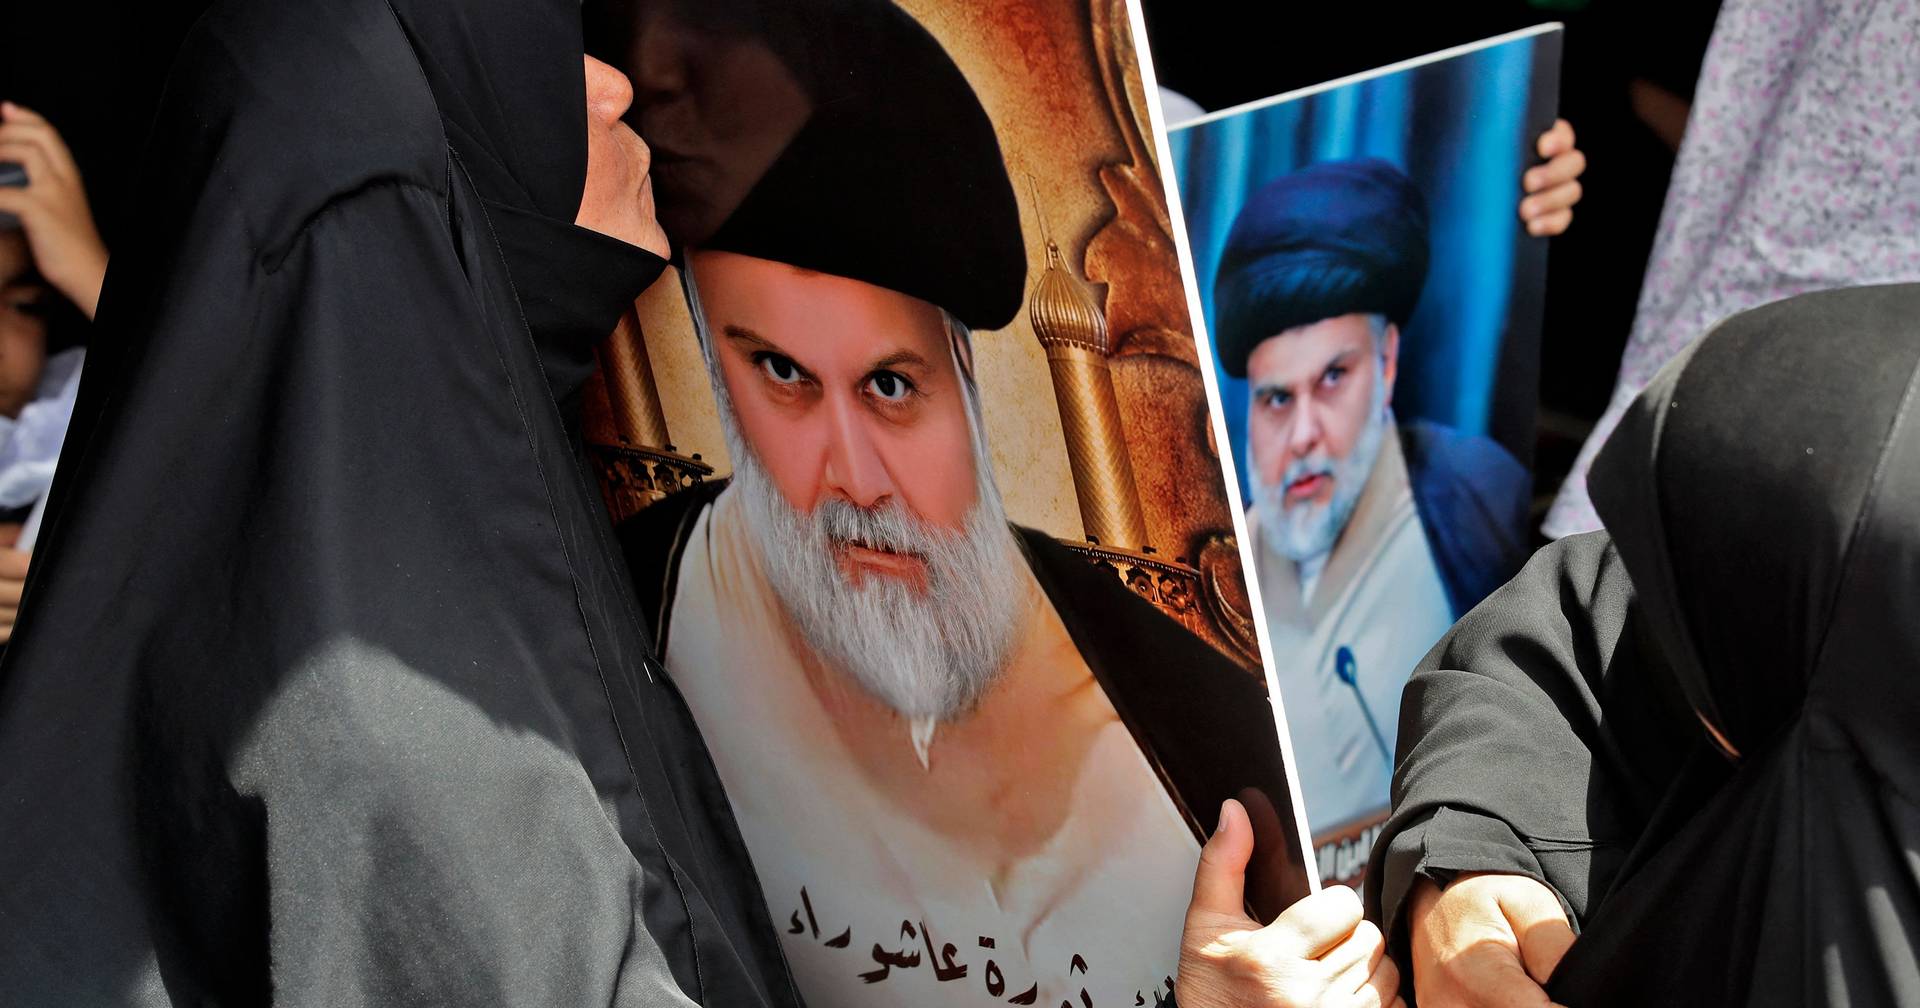 Iraque. Muqtada al-Sadr anunciou a sua retirada da política. Facto ou ficção?